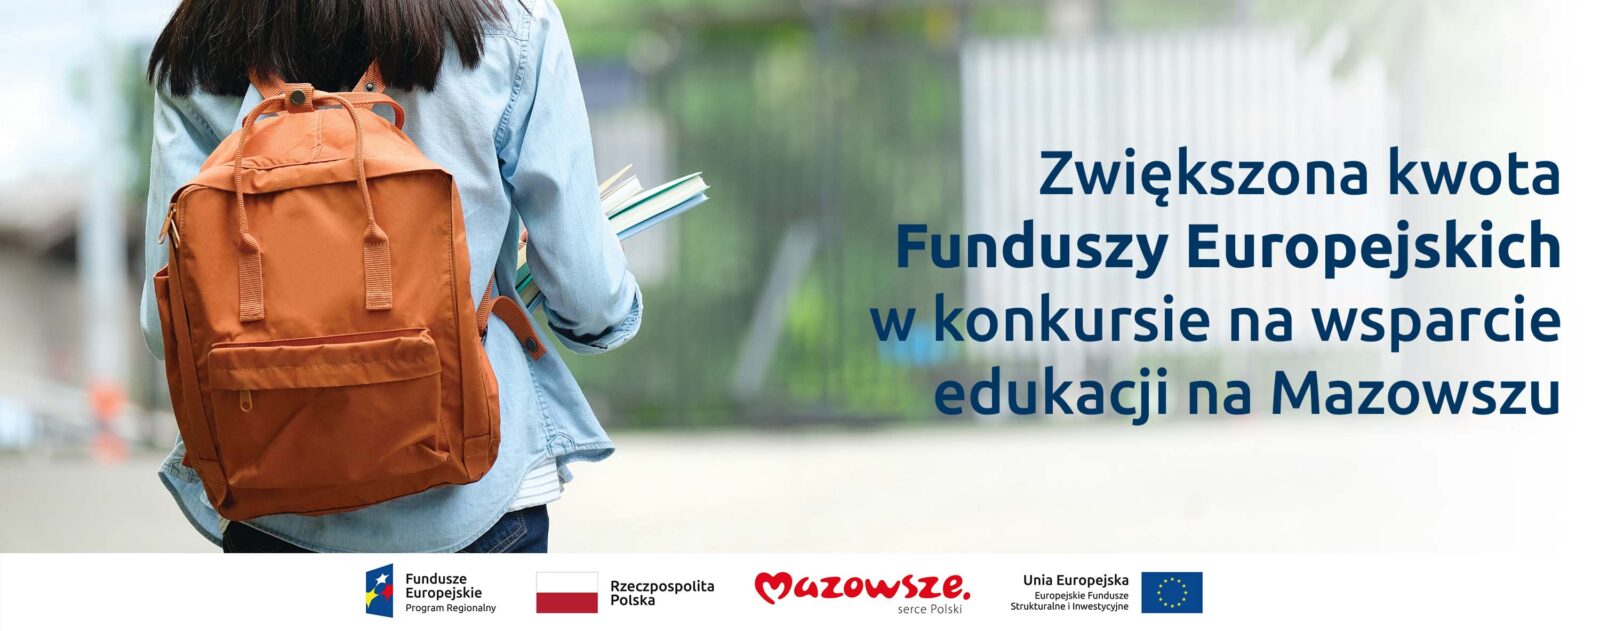 Na grafice znajduje się hasło: Zwiększona kwota Funduszy Europejskich w konkursie na wsparcie edukacji na Mazowszu. W tle zdjęcie dziewczynki z plecakiem, trzymającej w ręce książki.